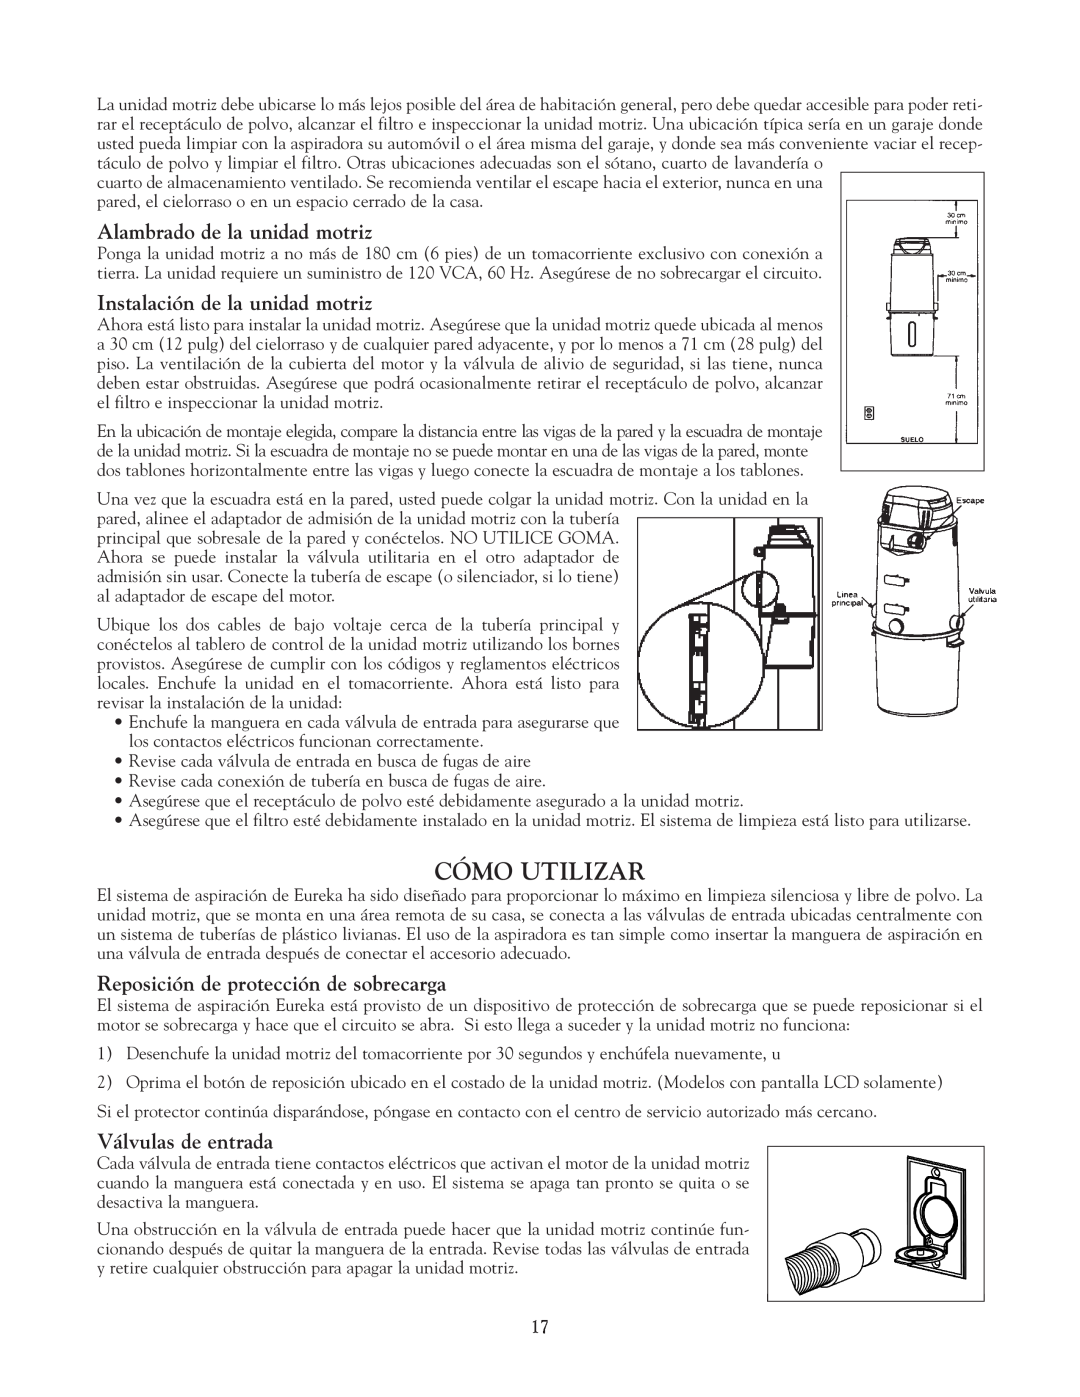 Eureka Vacuum System Cleaner owner manual Cómo Utilizar, Alambrado de la unidad motriz, Instalación de la unidad motriz 